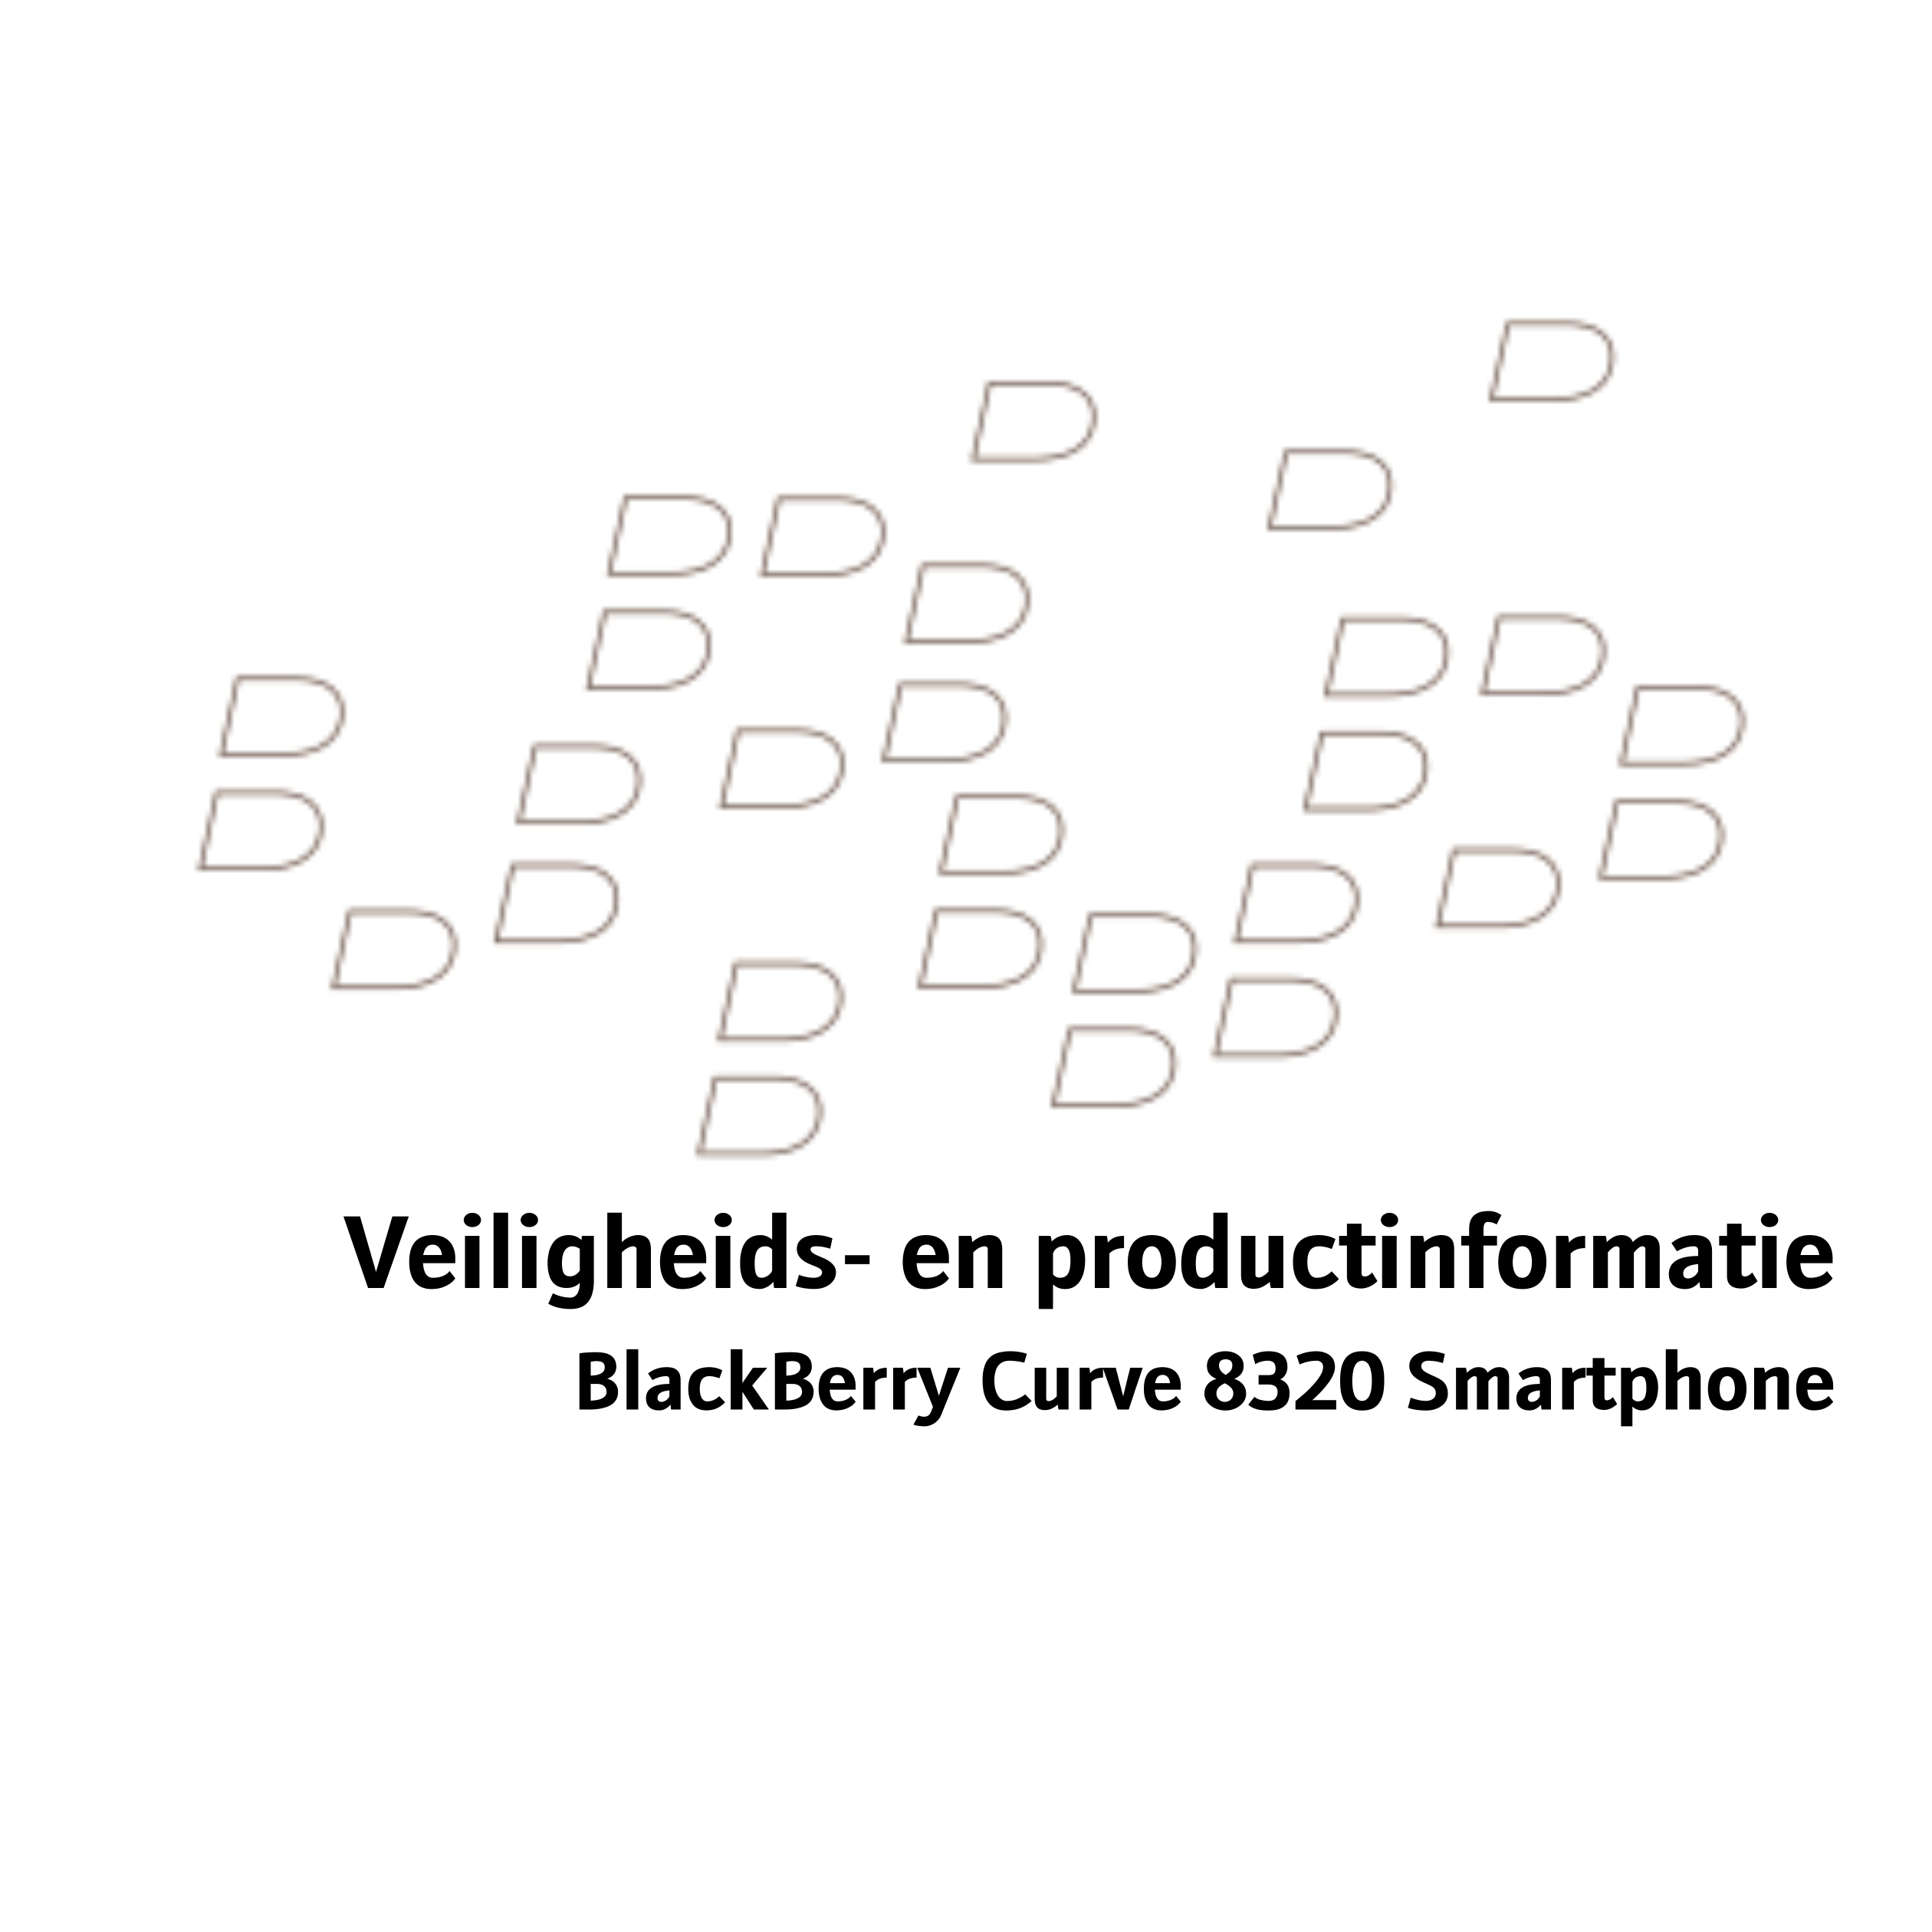 Veiligheids- en productinformatie
BlackBerry Curve 8320 Smartphone